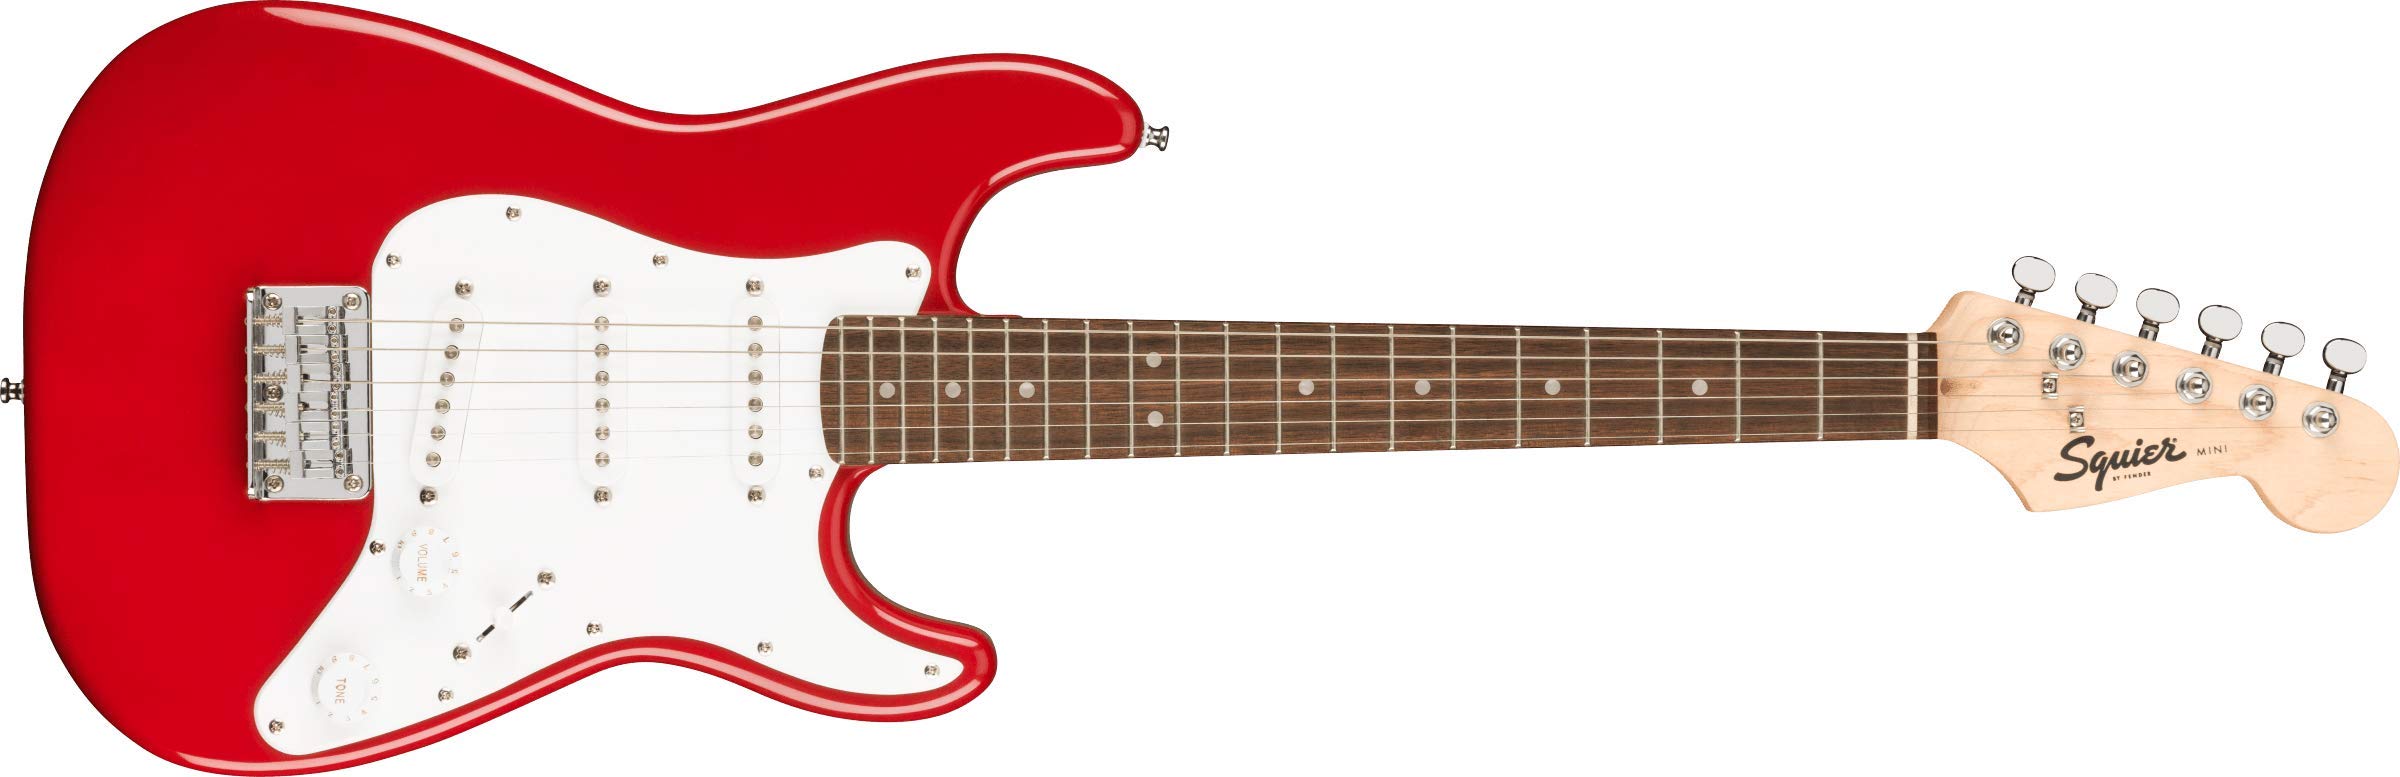 Squier Mini Strat Electric Guitar- Dakota Red with Laur...